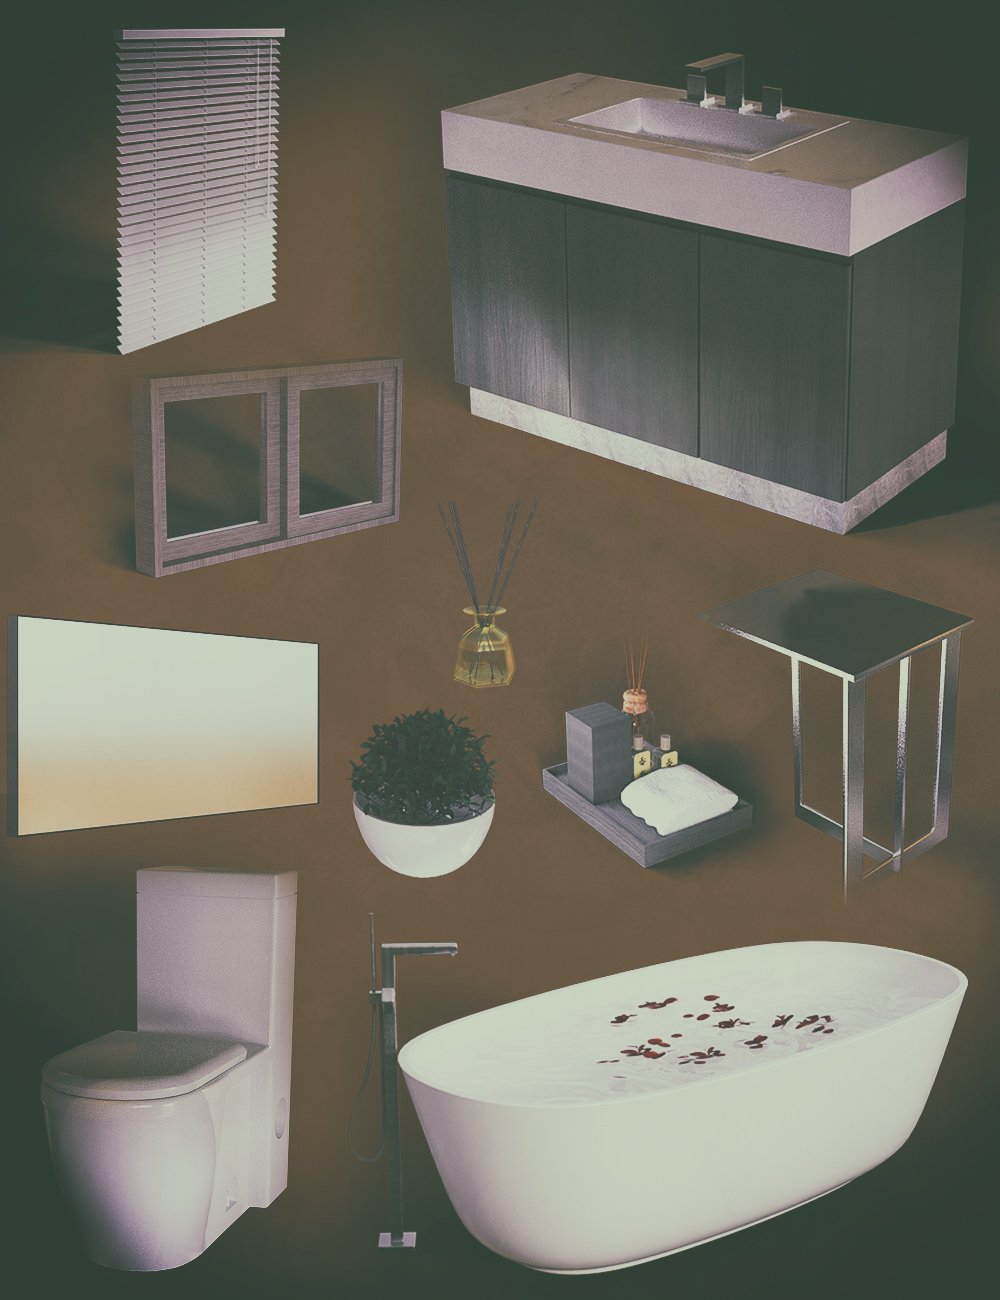 FE Modern Bathroom GreyRoom by: FeSoul, 3D Models by Daz 3D